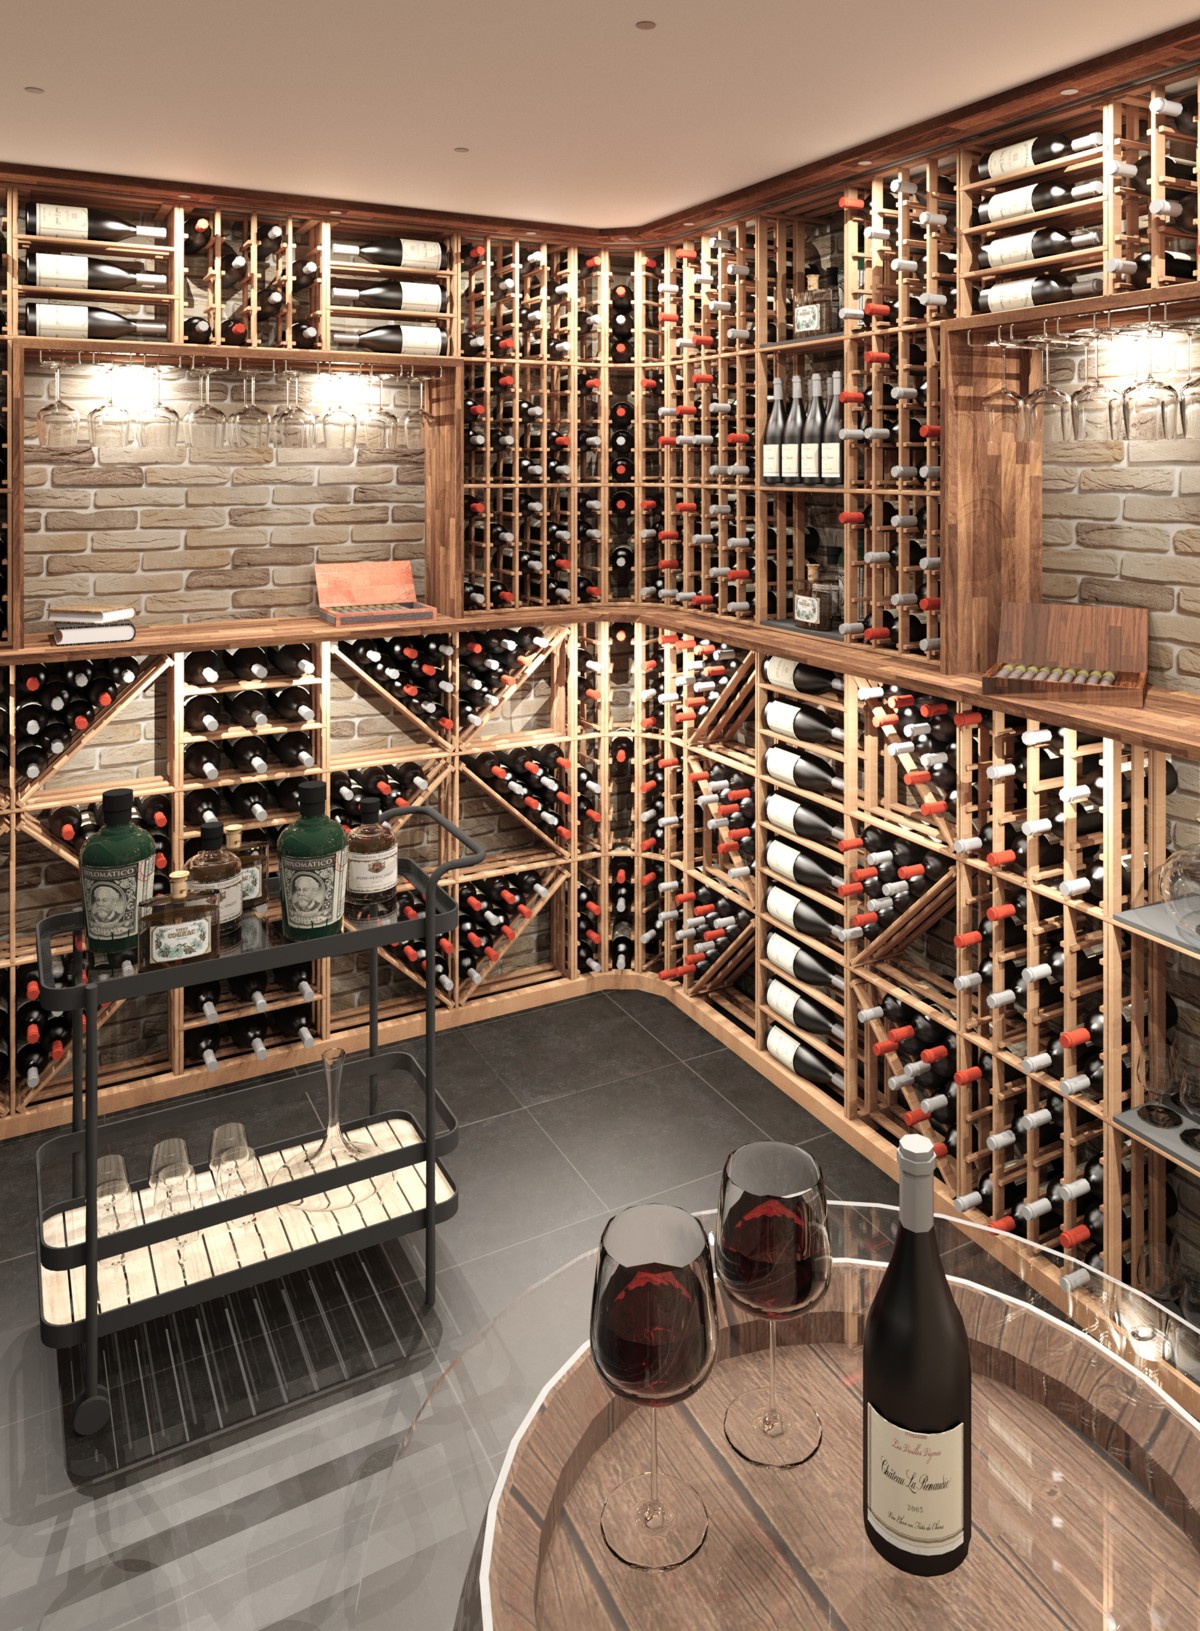 Cách thiết kế hầm rượu hoàn hảo cho bộ sưu tập rượu của bạn